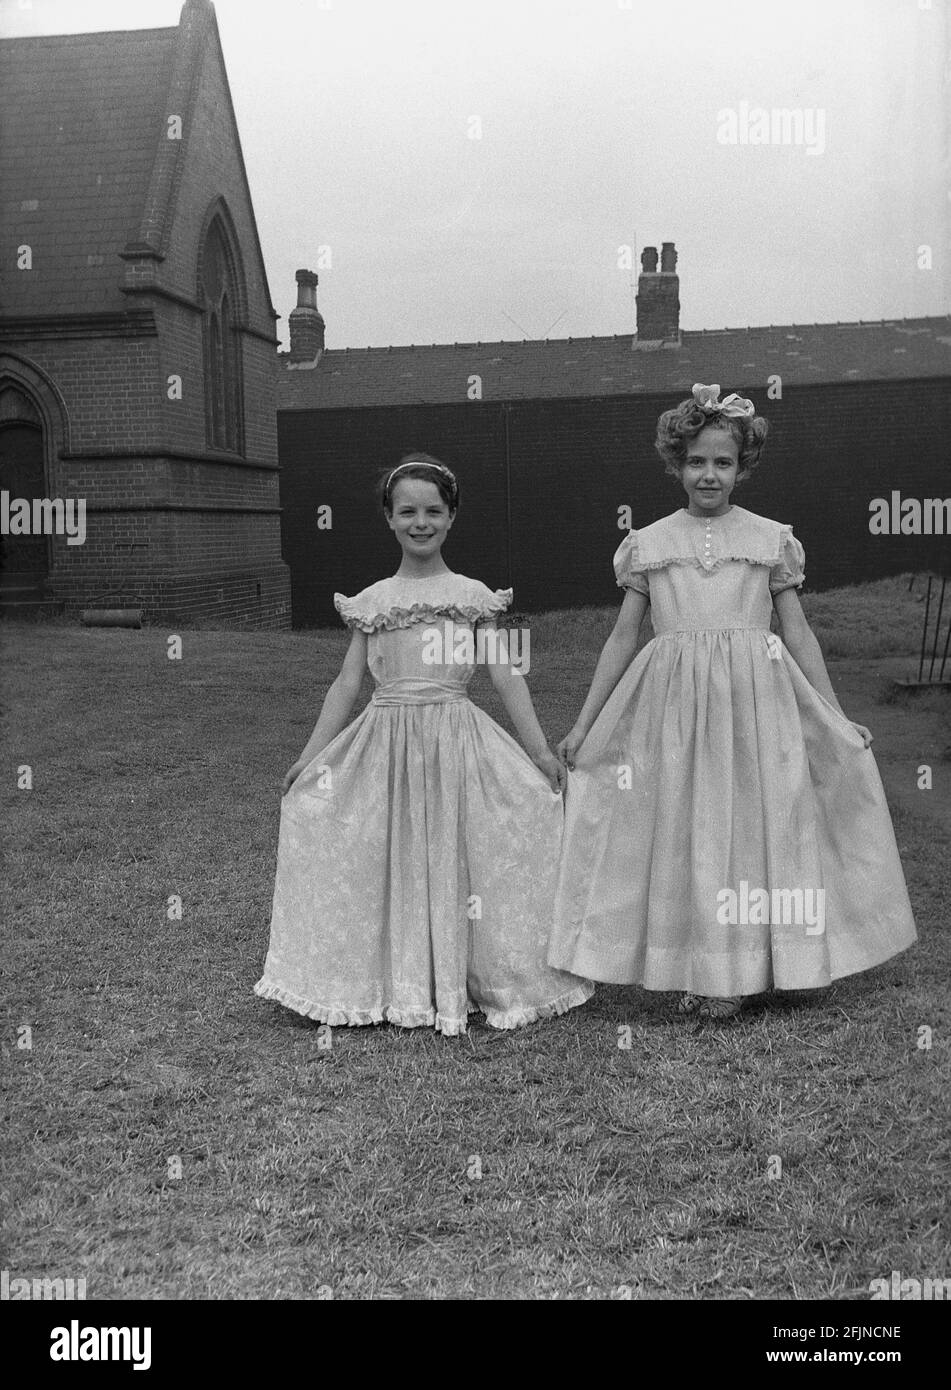 1956, historique, à l'extérieur dans le domaine de l'église, deux jeunes filles montrent leurs jolies robes pour le carnaval du jour de mai, où ils souserviront la Reine de mai de l'année, Leeds, Angleterre, Royaume-Uni. Un ancien festival célébrant l'arrivée du printemps, le jour de mai a impliqué le couronnement d'une reine de mai et la danse autour d'un Maypole, des activités qui ont eu lieu en Angleterre pendant des siècles. Sélectionné parmi les filles de la région, la Reine de mai commencerait la procession des chars et de la danse. Dans le Nord industrialisé de l'Angleterre, les écoles du dimanche de l'Église ont souvent dirigé l'organisation. Banque D'Images